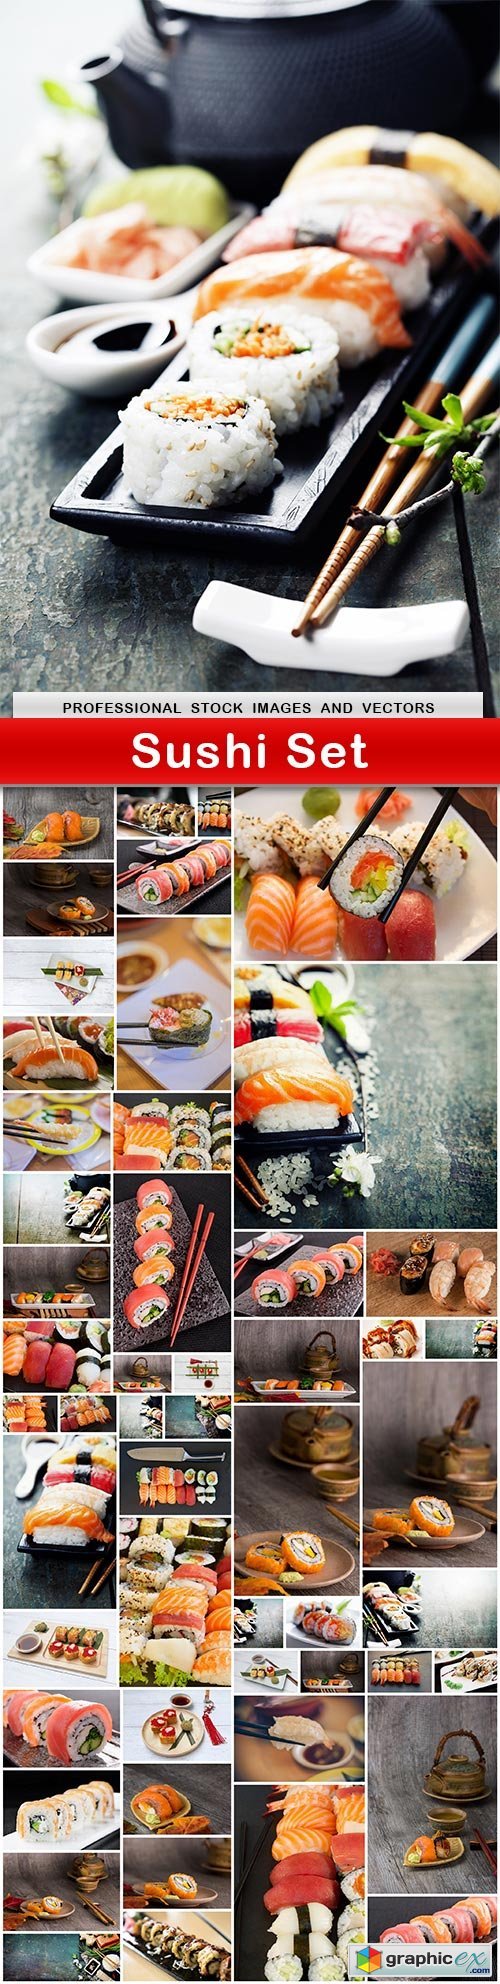 Sushi Set - 53 UHQ JPEG